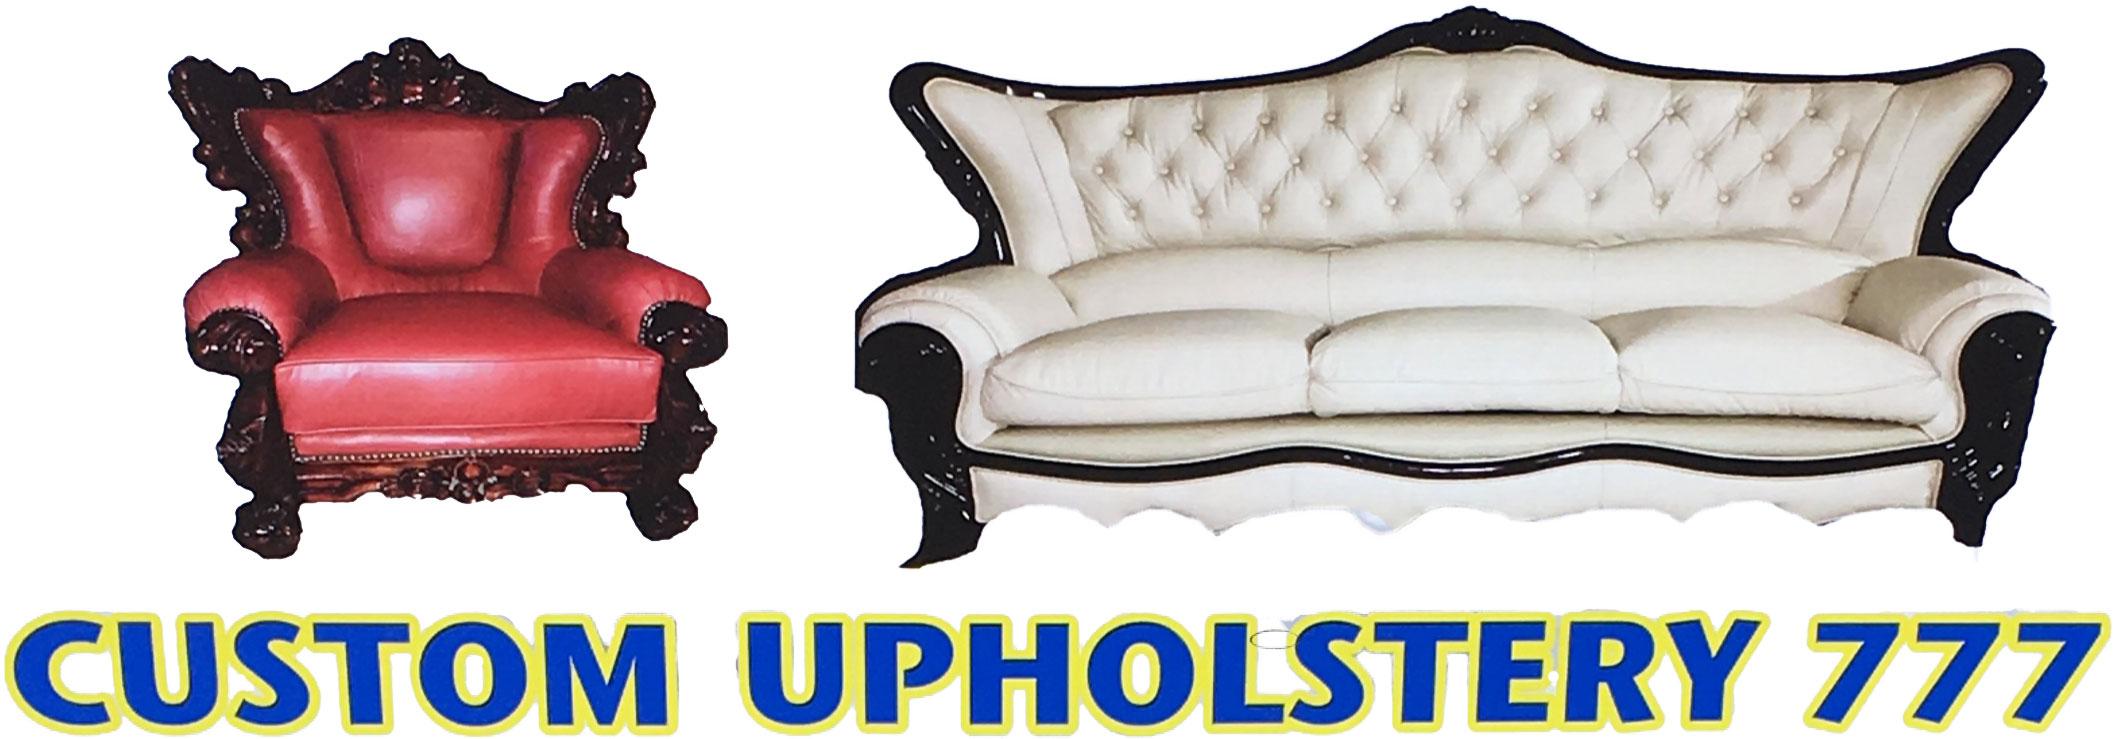 custom-upholstery-777-bg-01